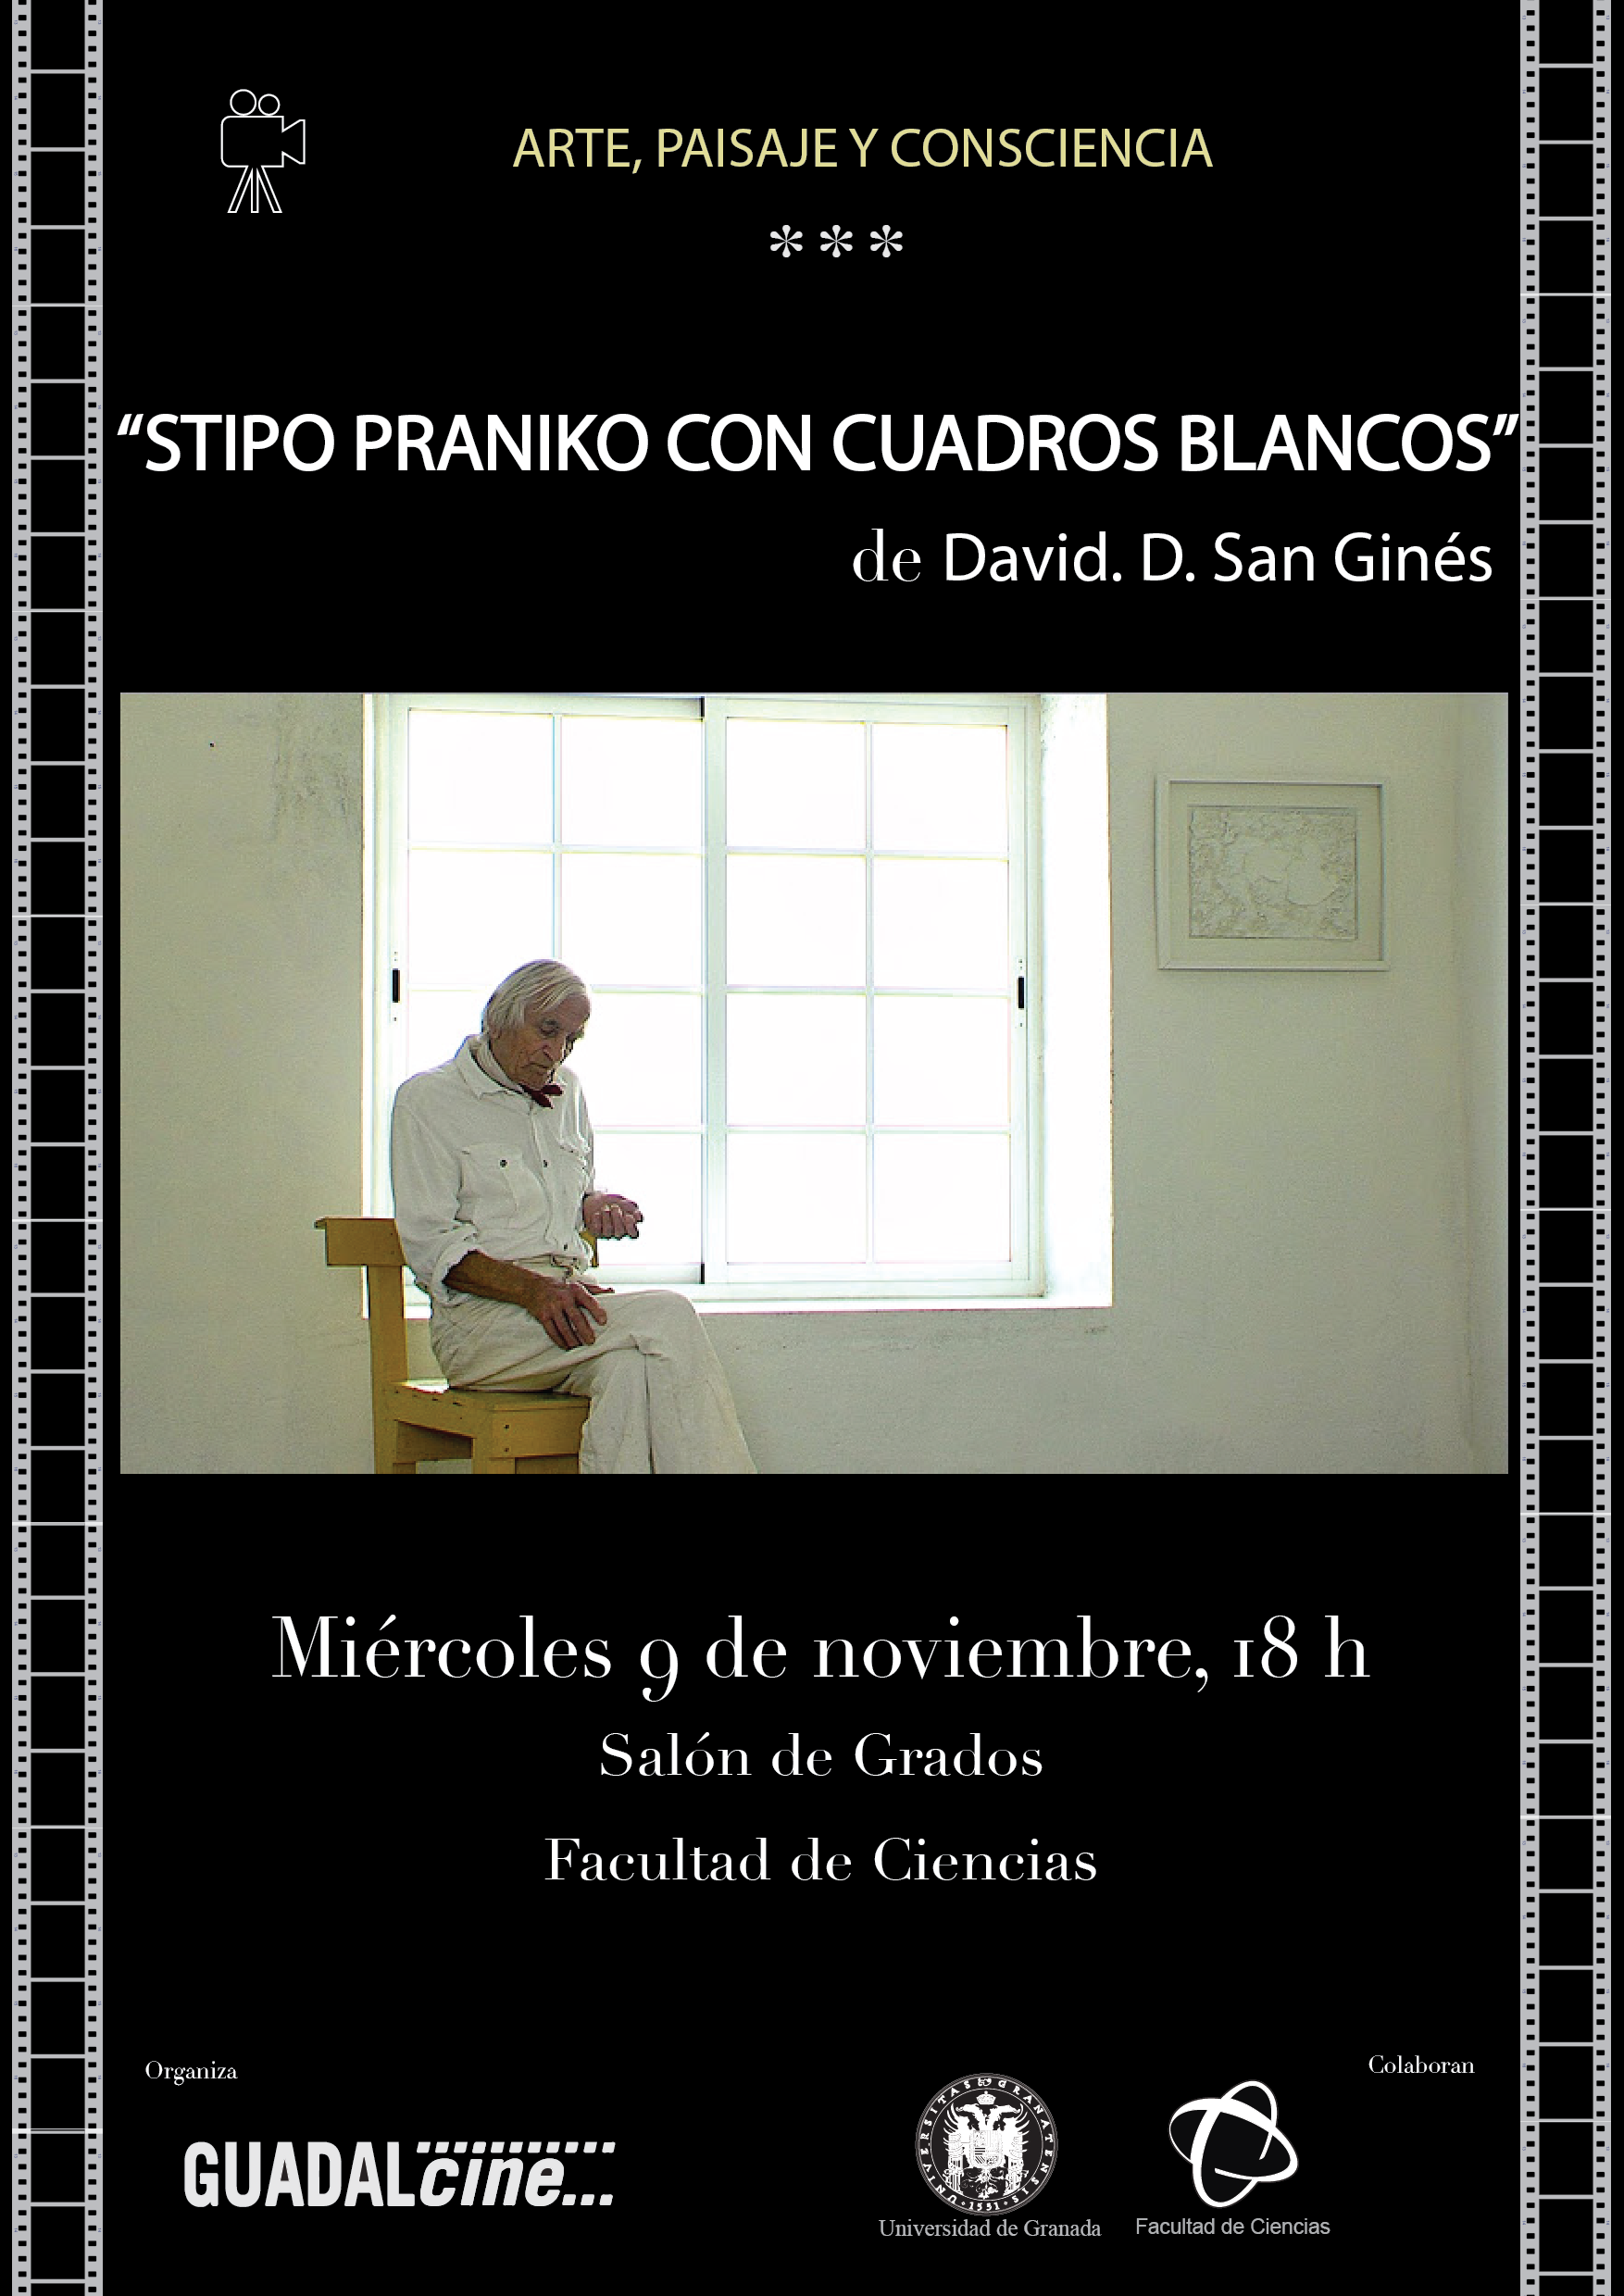 Proyección de la Película Stipo Praniko con cuadros blancos 